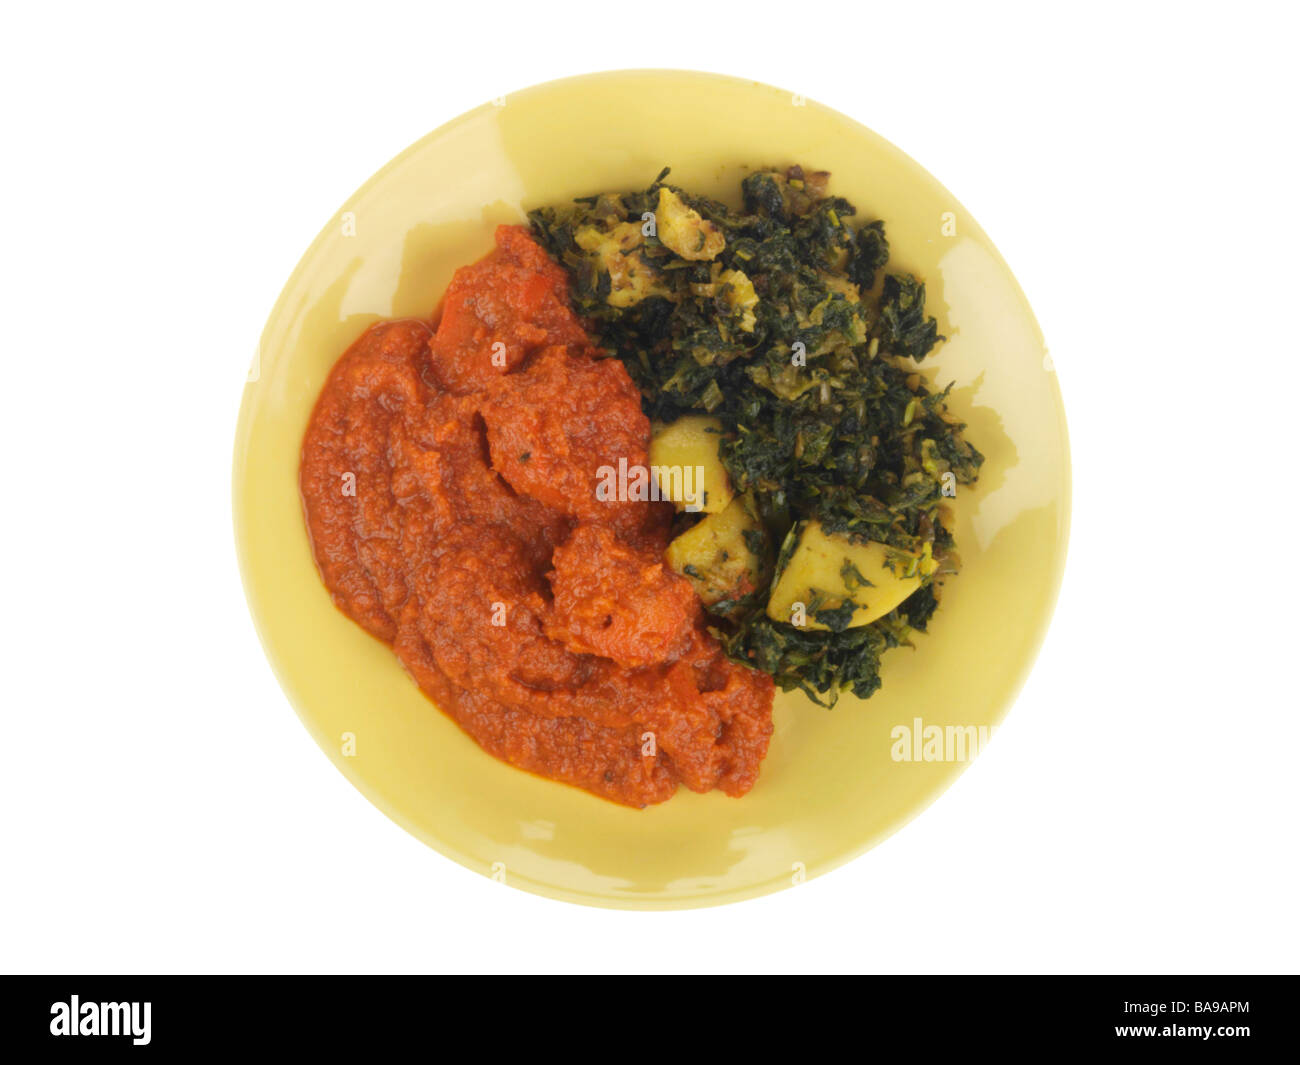 Appena cucinato in Stile Indiano Pollo Tikka Masala Curry con Sag, Aloo spinaci e patate isolata contro uno sfondo bianco con n. di persone Foto Stock